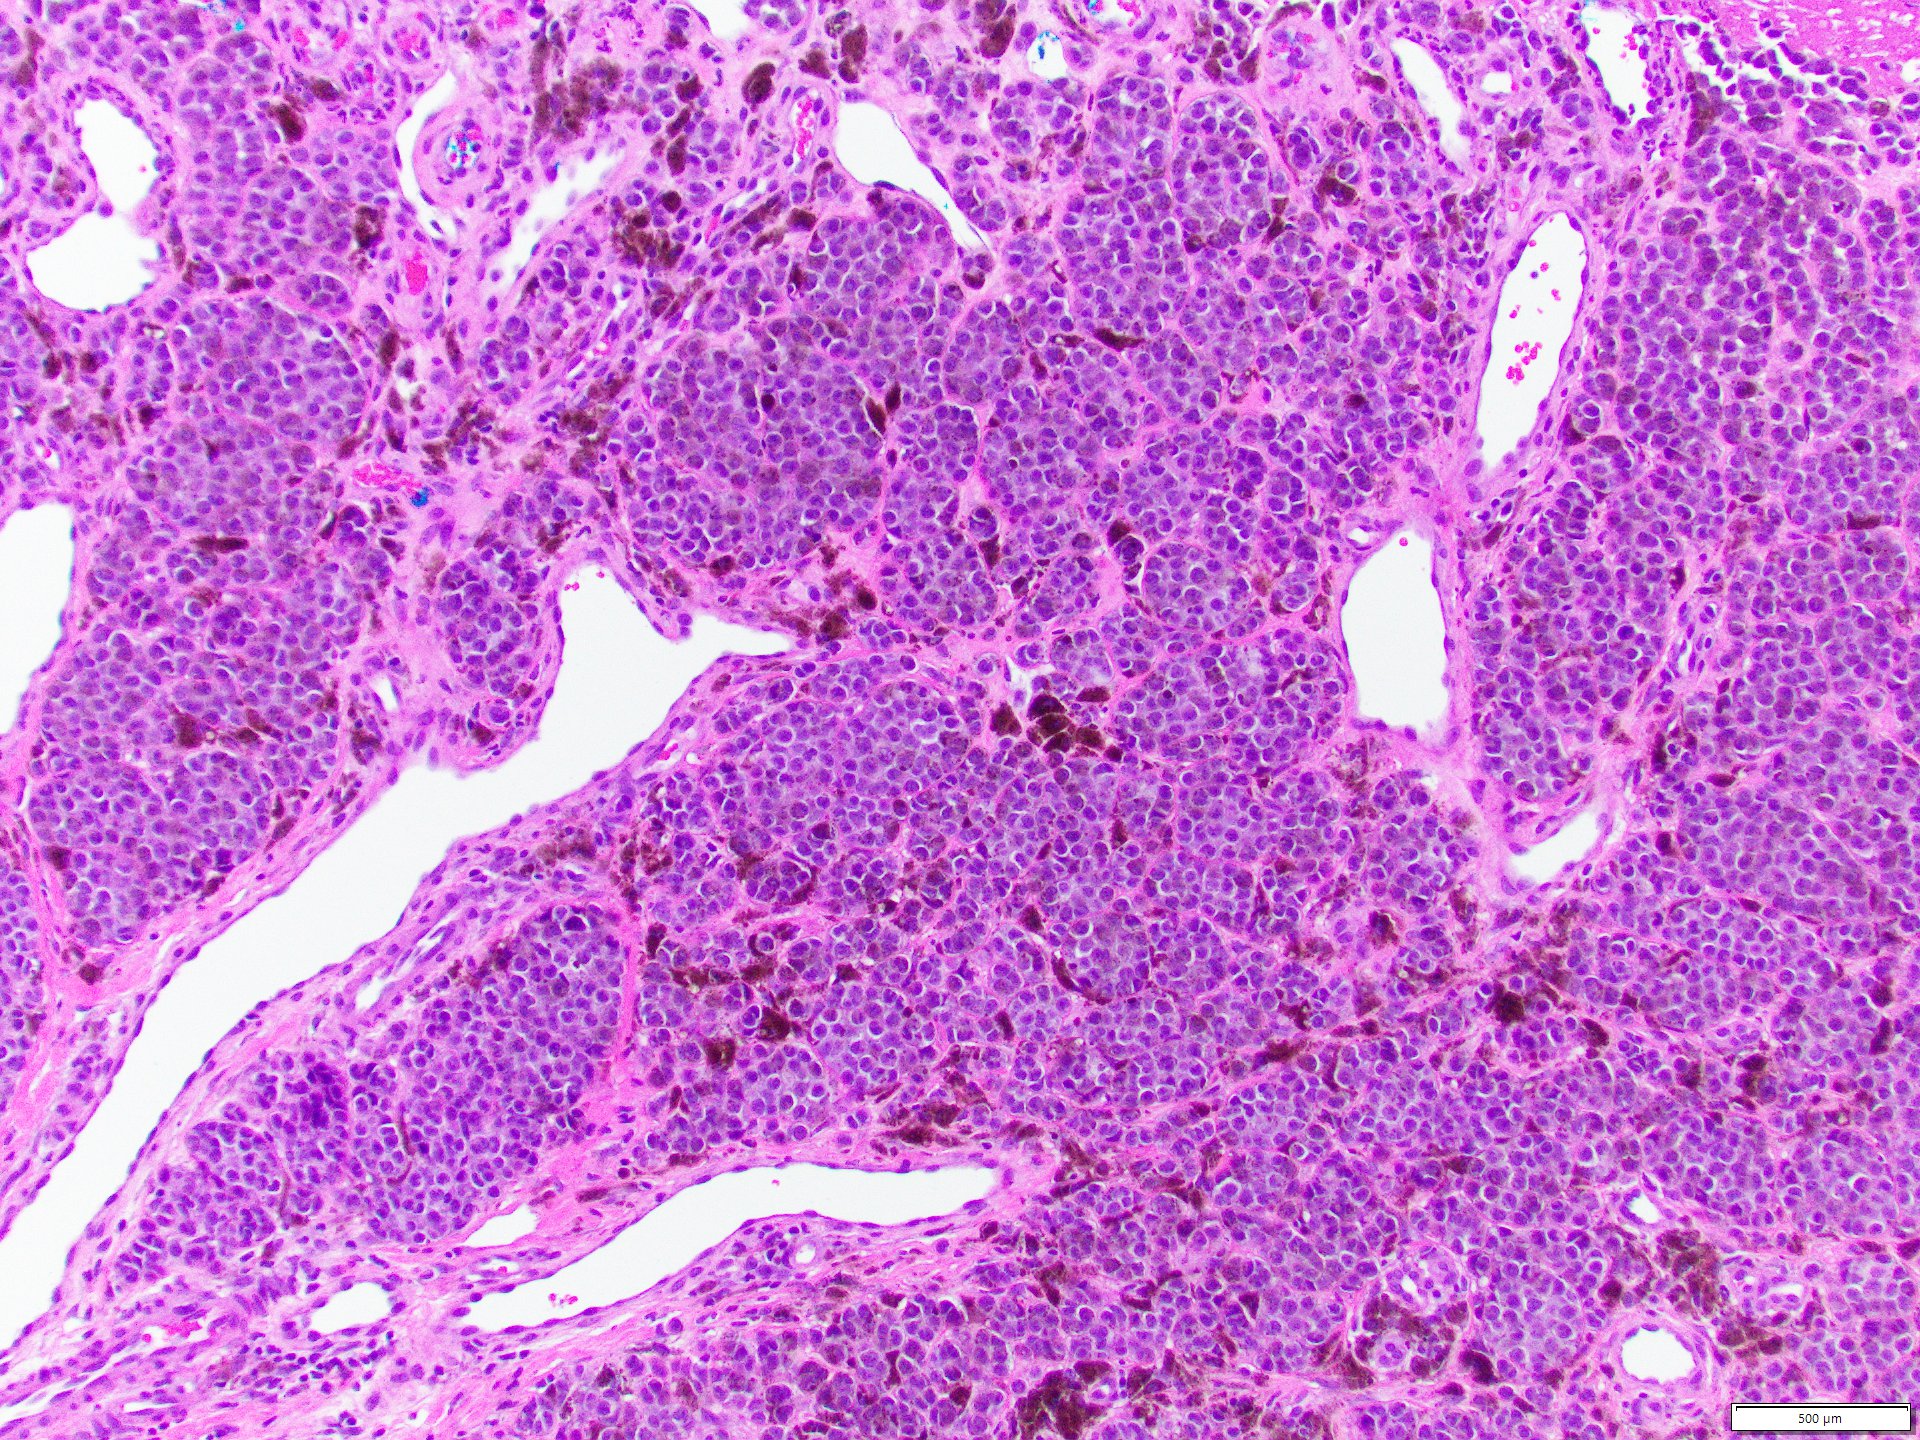 Enlarged hyperchromatic melanocytes